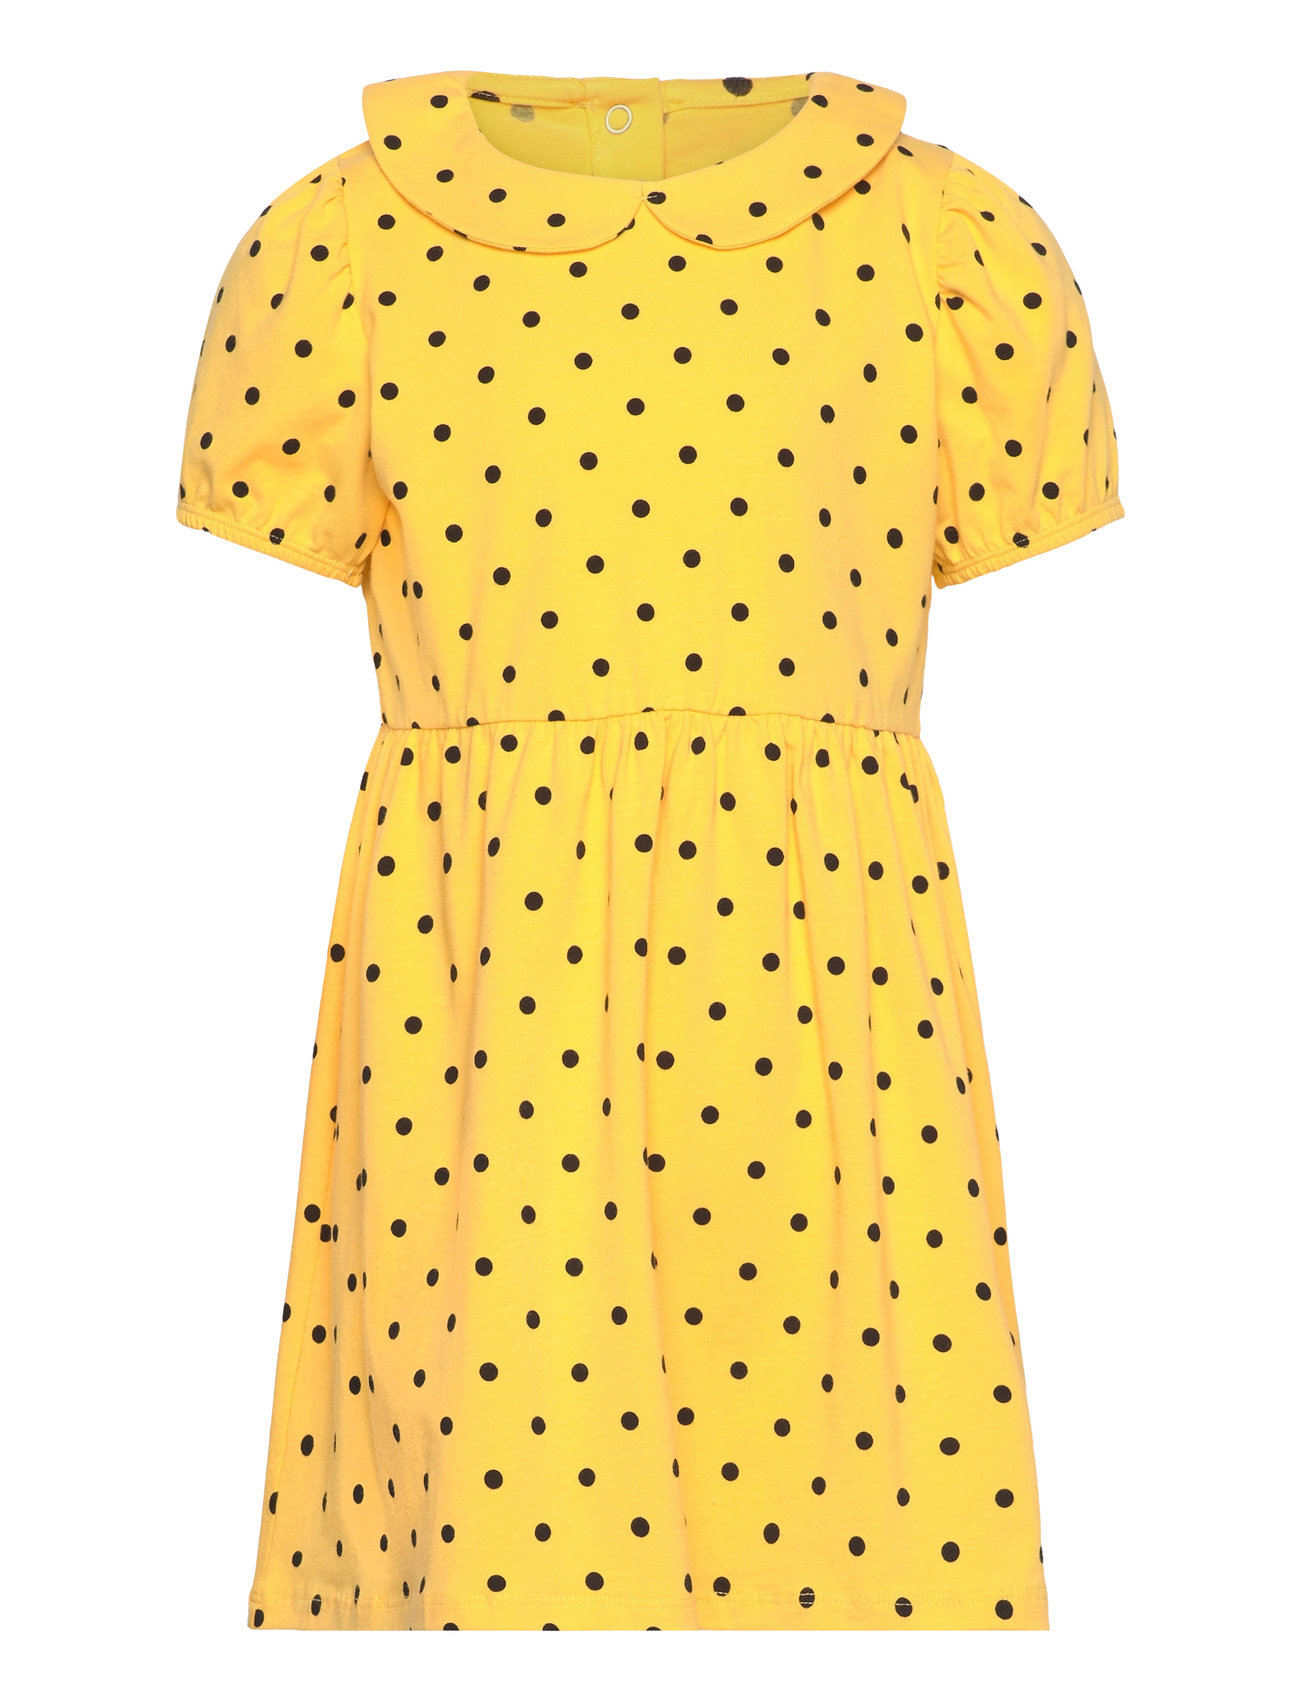 Polka Dot Aop Ss Dress Dresses & Skirts Dresses Casual Dresses Short-sleeved Casual Dresses Yellow Mini Rodini